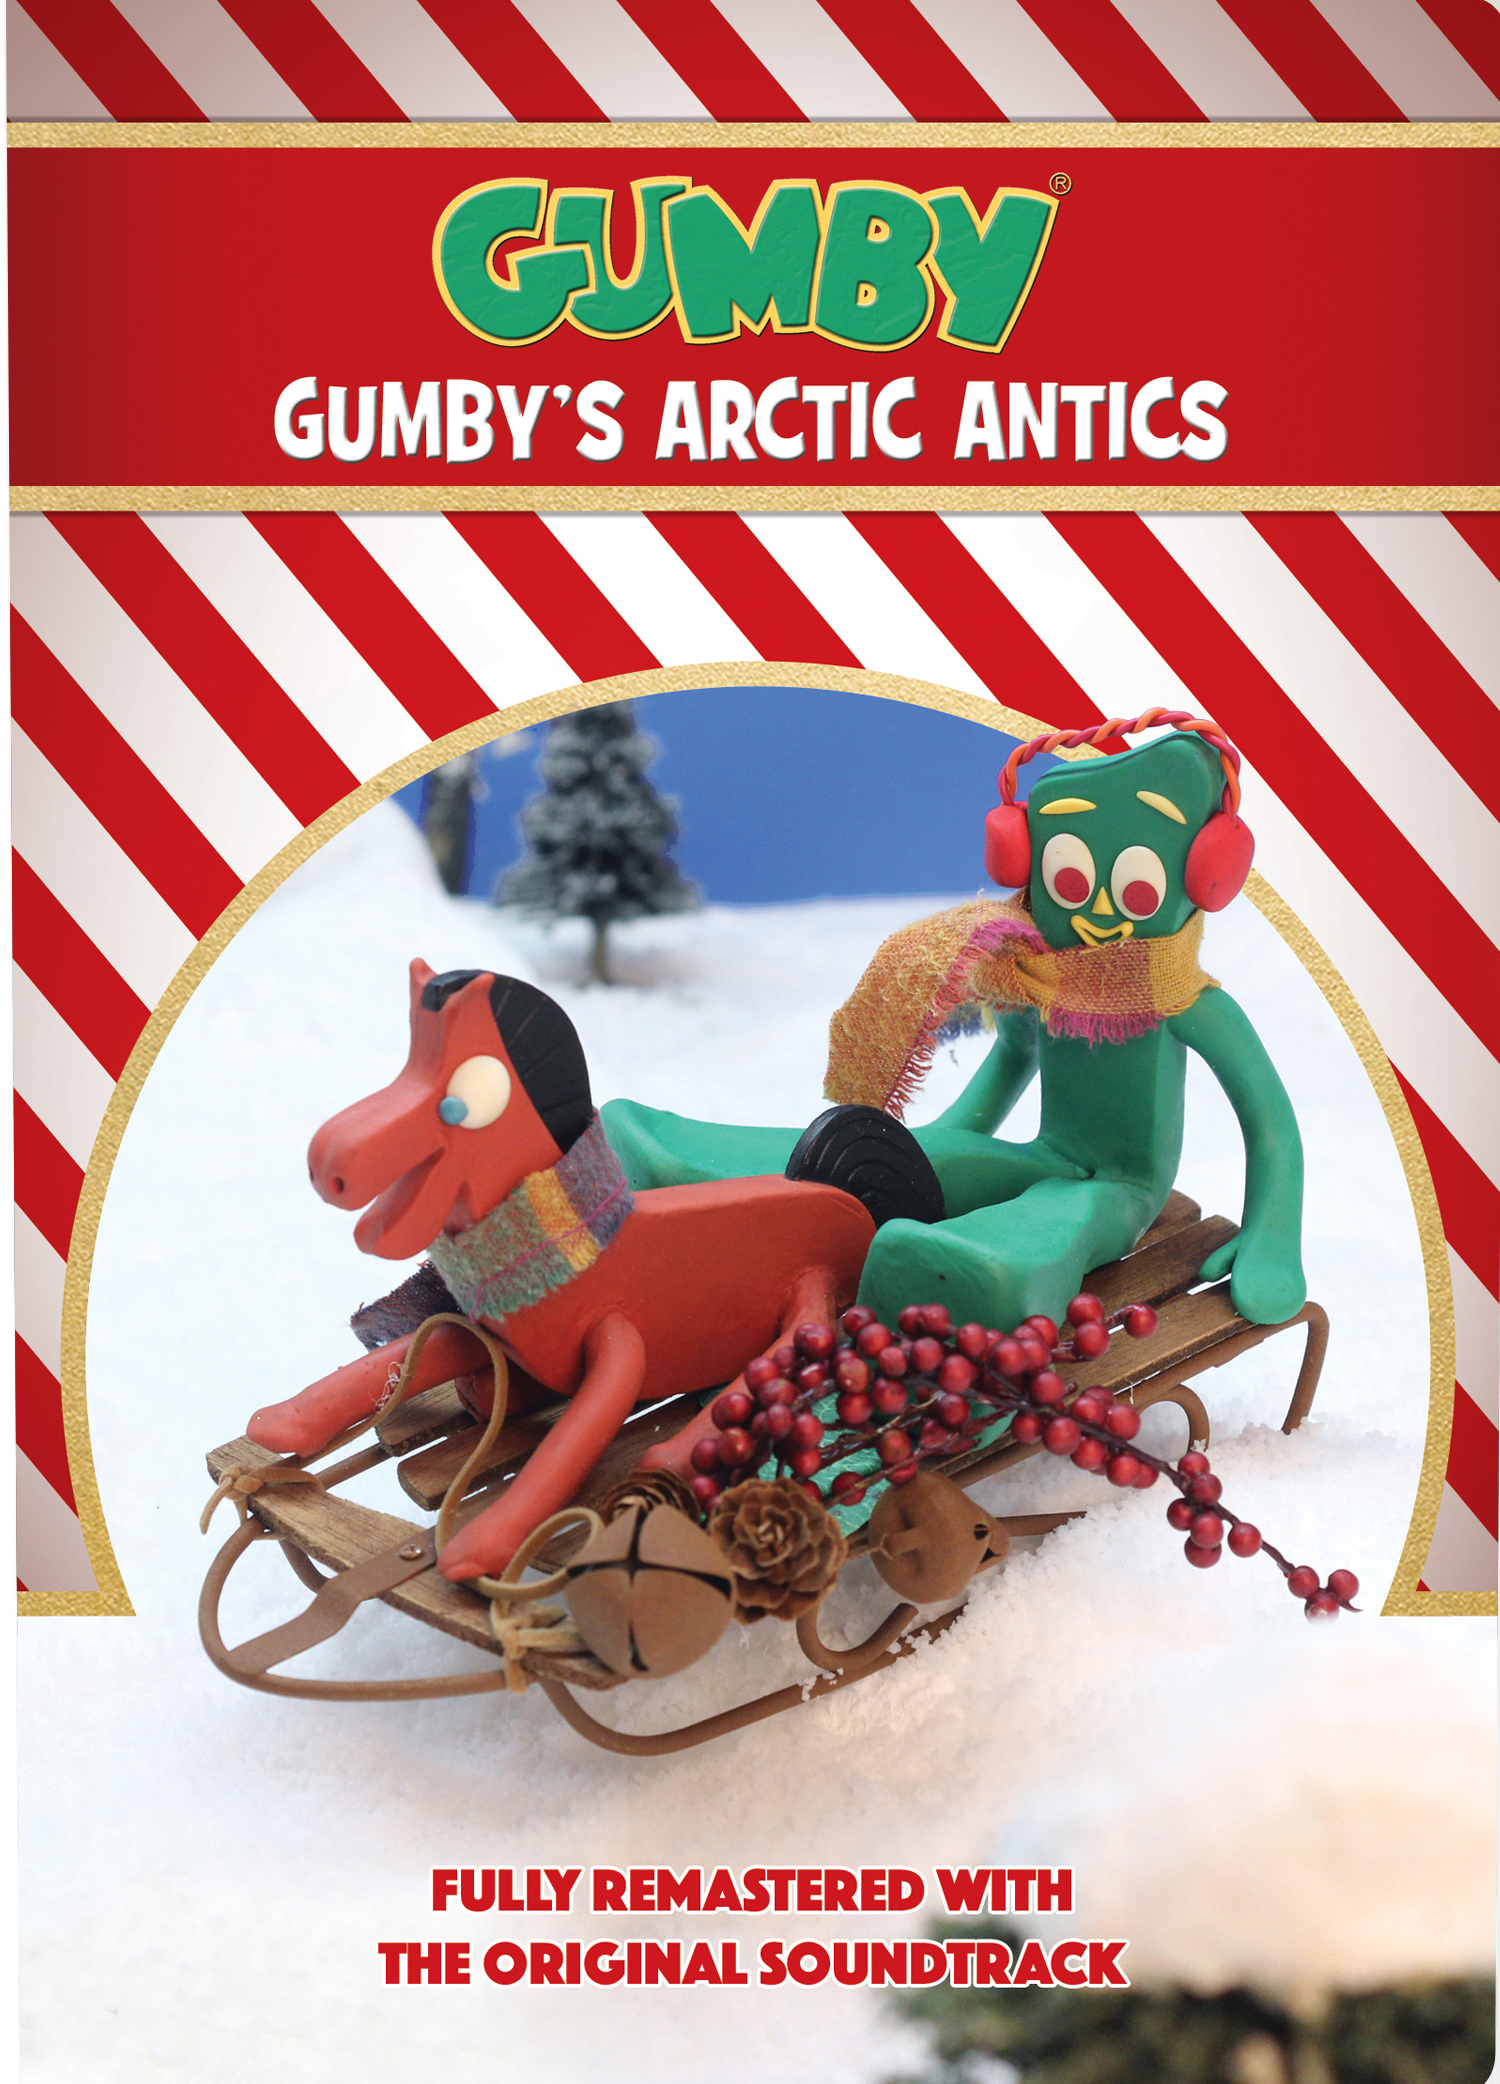 Gumby: Gumby’s Arctic Antics – Humorous Family Entertainment